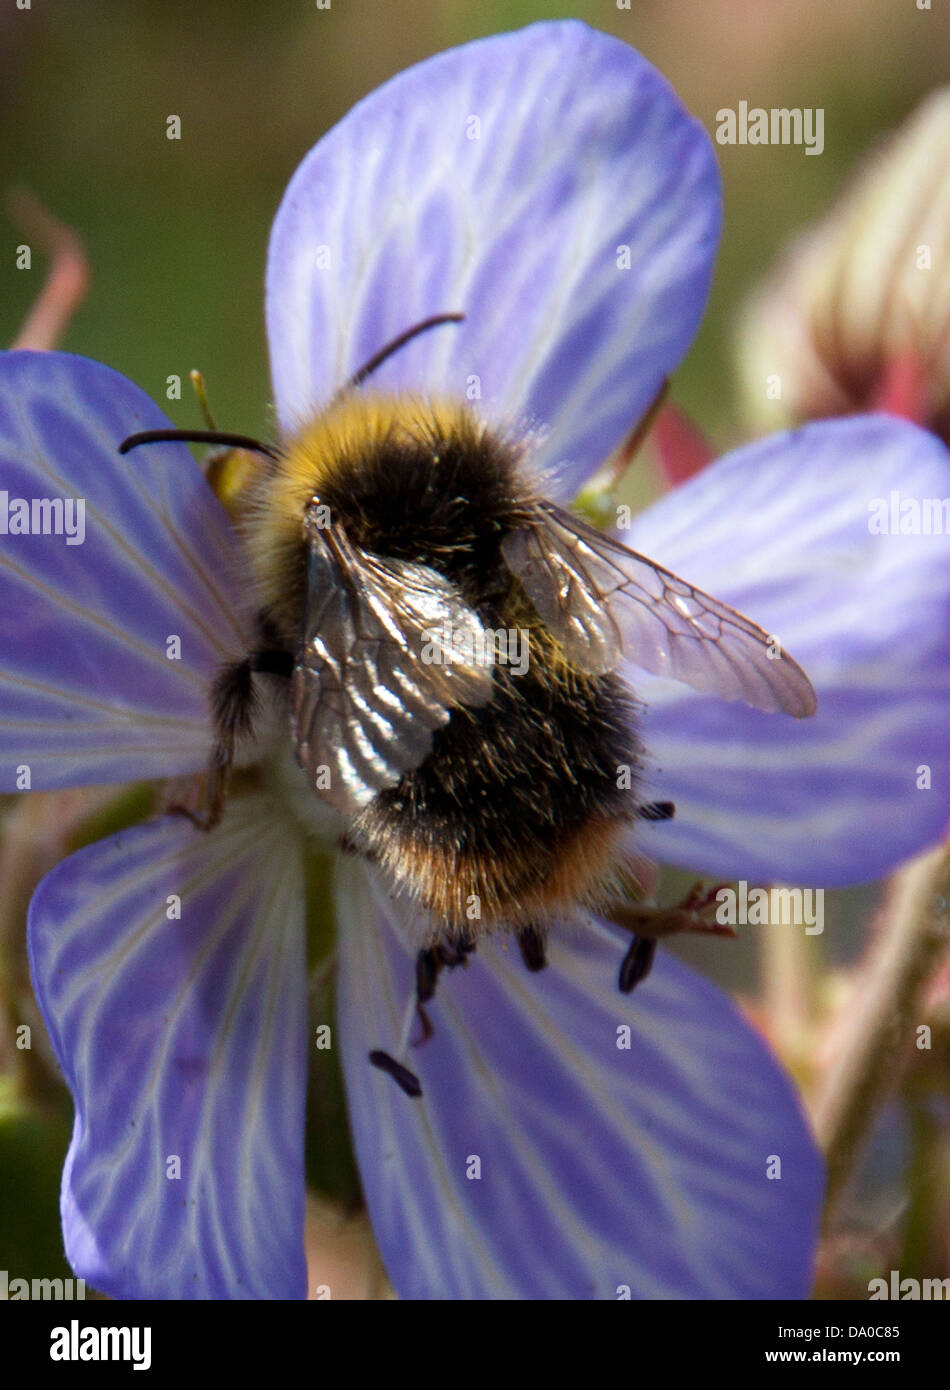 La recherche de l'Abeille du nectar, tandis que la pollinisation des fleurs sauvages locales. Banque D'Images